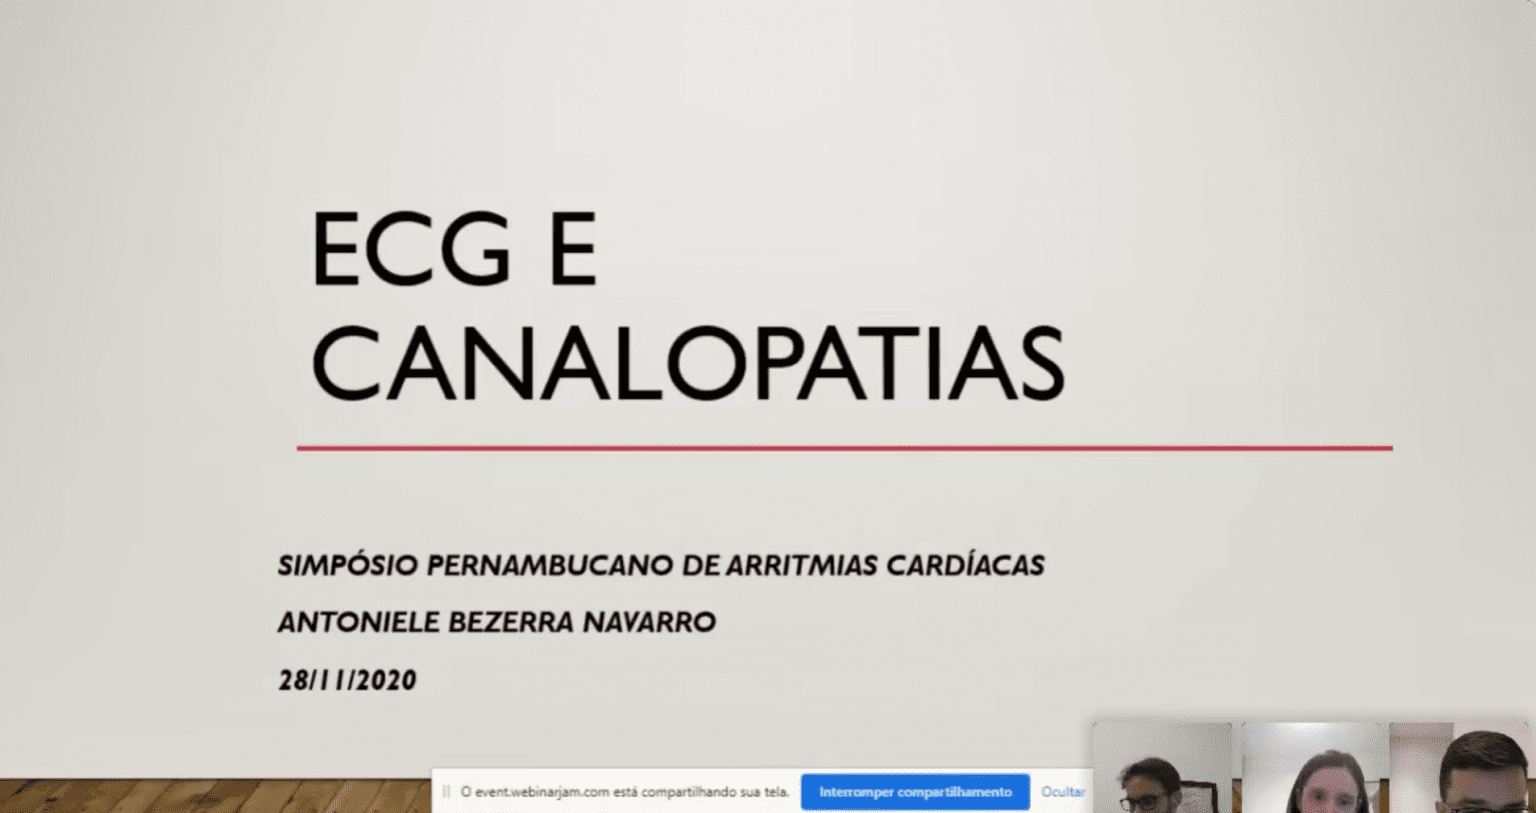 Cardiologia-Sbc-Pe-Ecg-E-Canalopatias